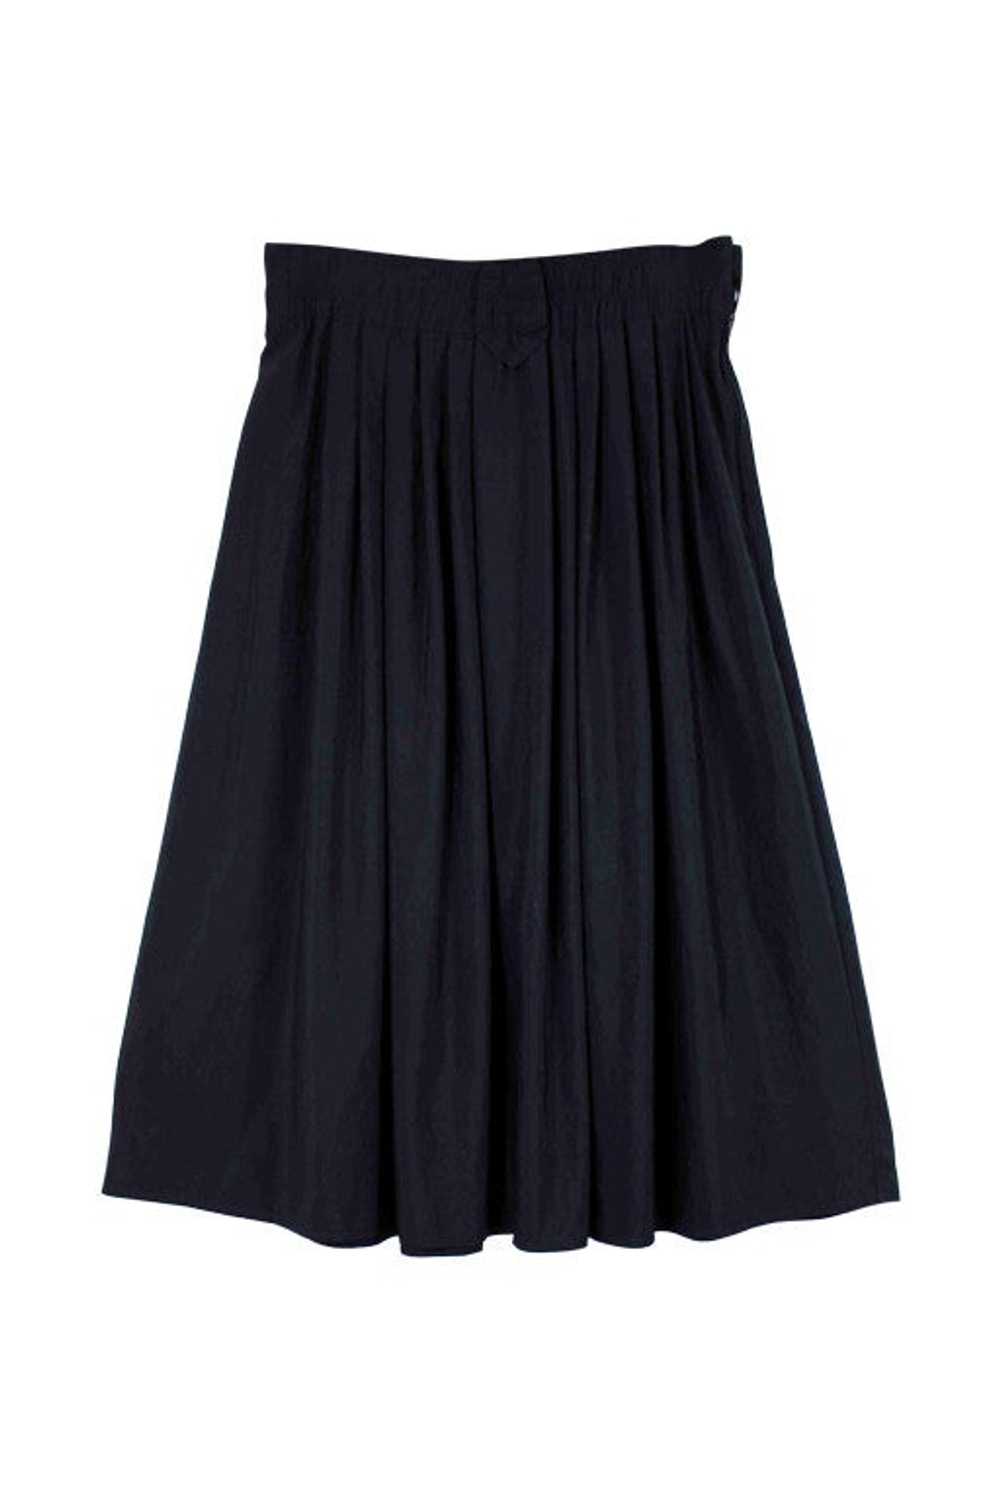 80's skirt - Navy blue midi skirt Made in France … - image 1